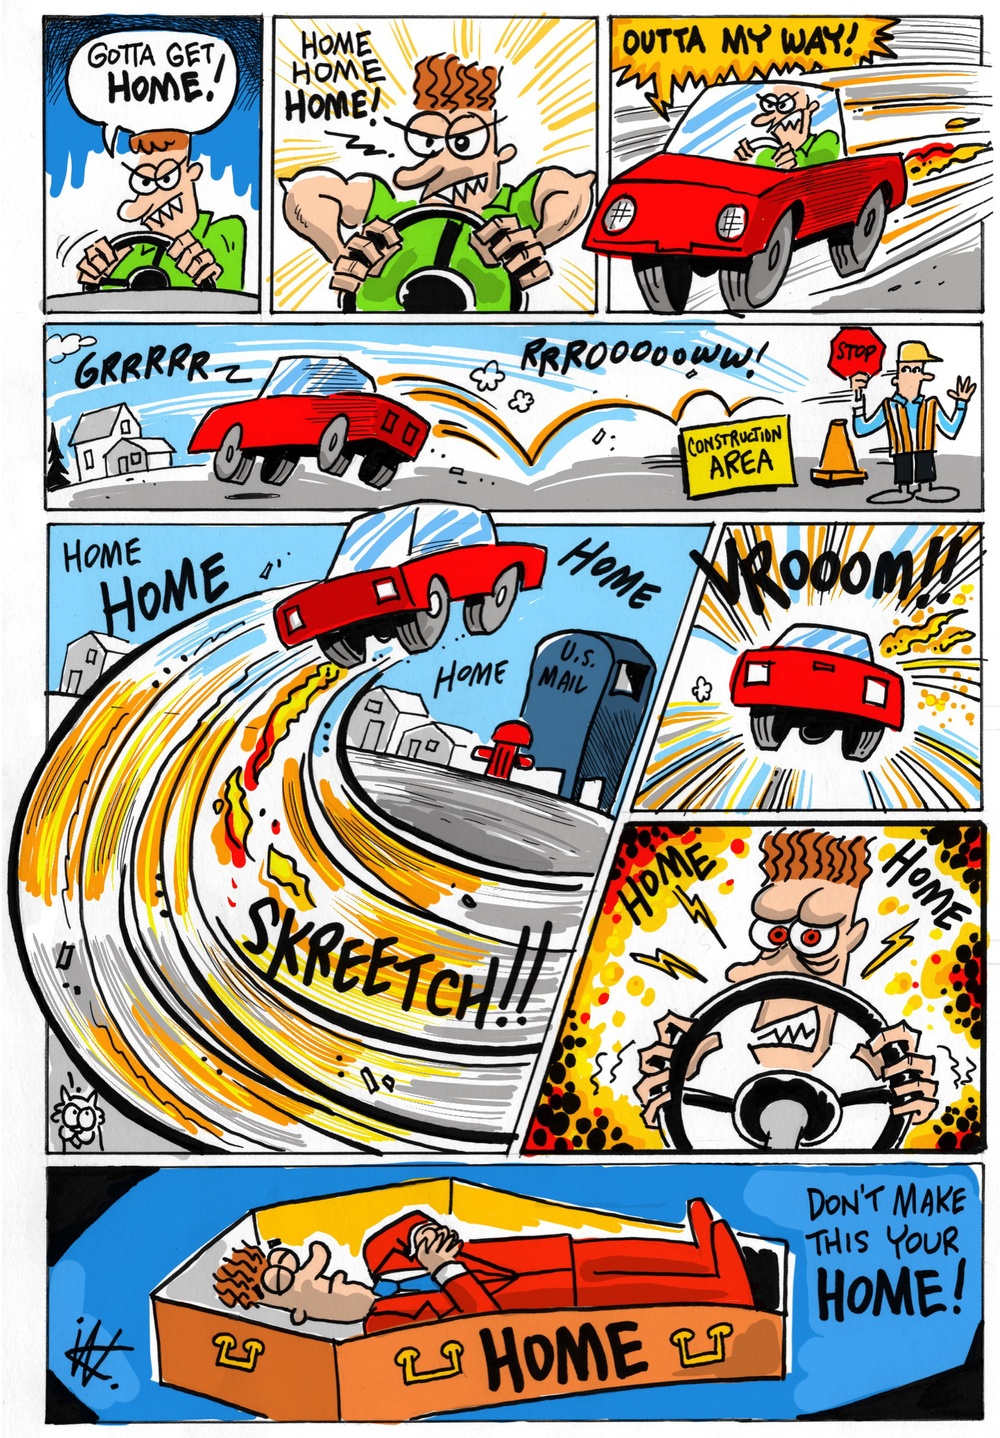 Safety Cartoon - Home Rage